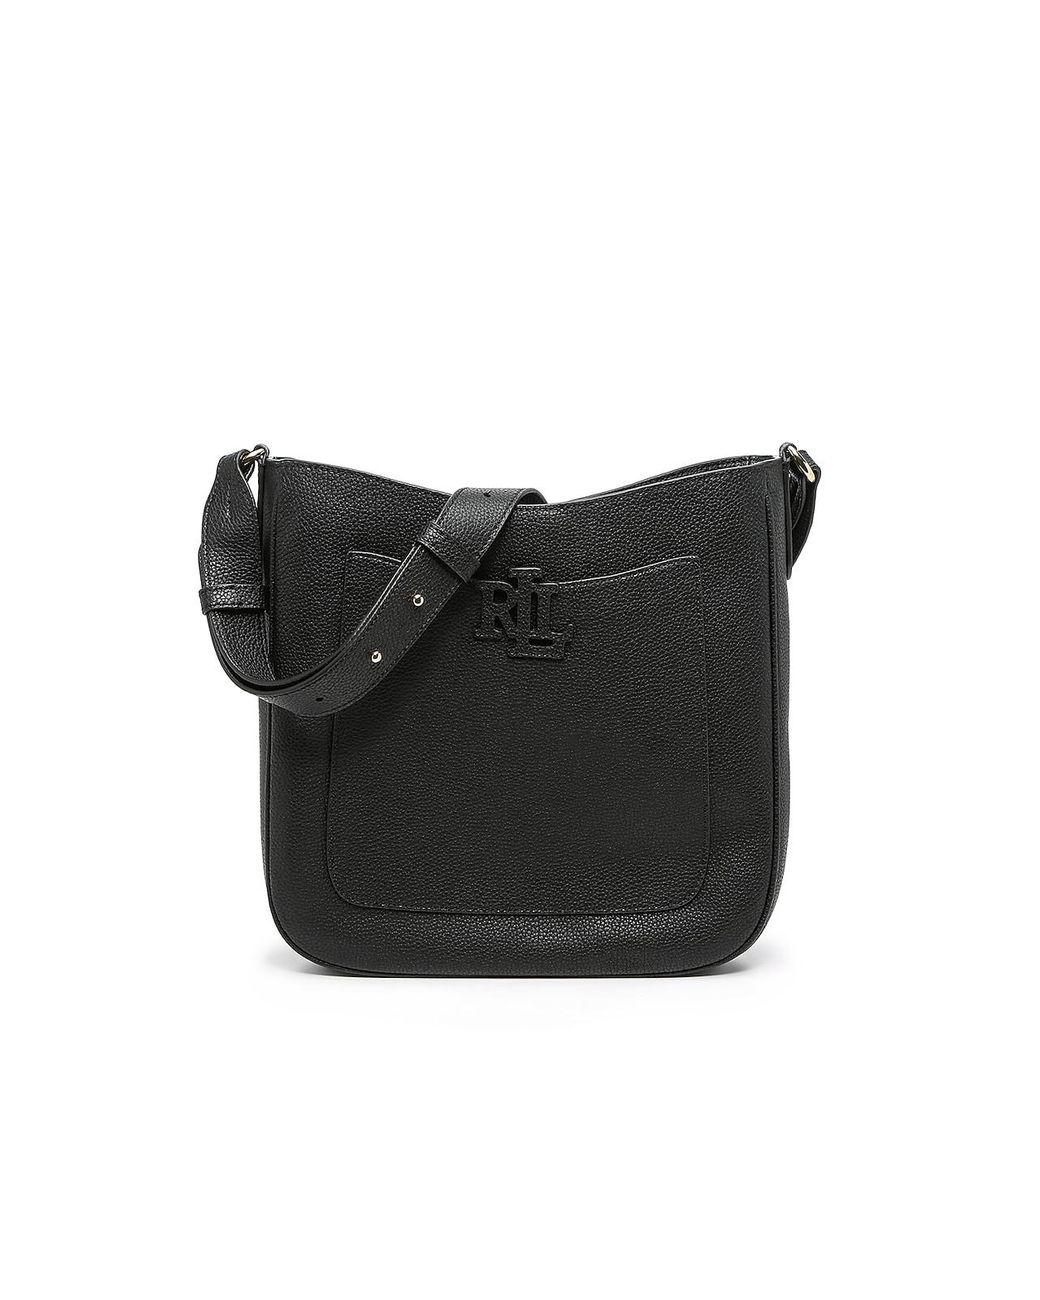 Lauren Ralph Lauren Cameryn Leather Crossbody Bag